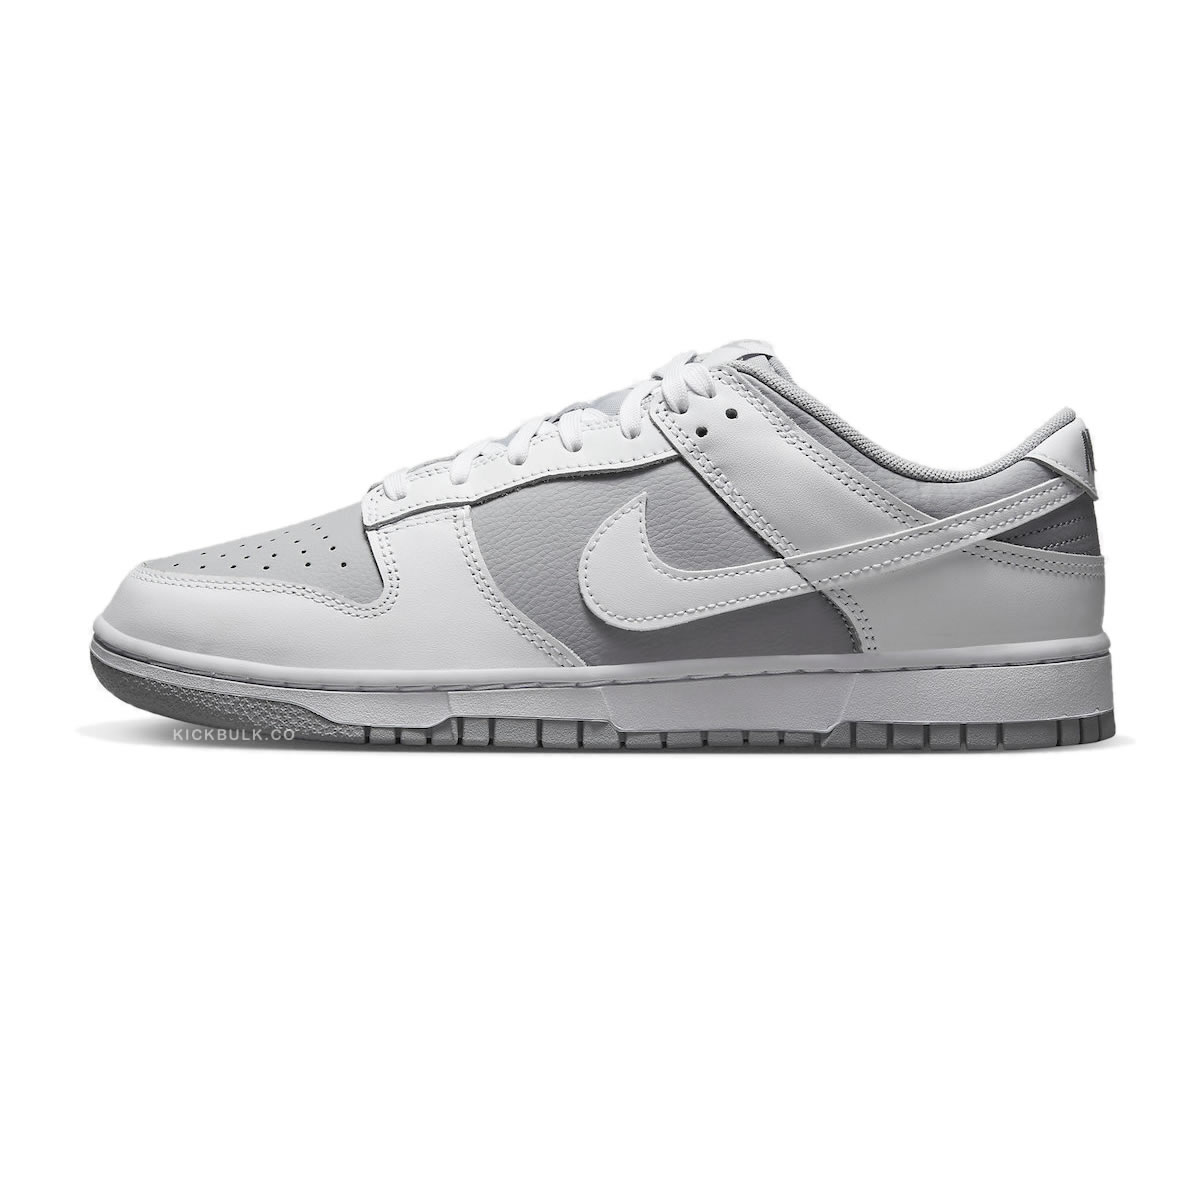 Nike Dunk Low White Neutral Grey Dj6188 003 1 - www.kickbulk.cc